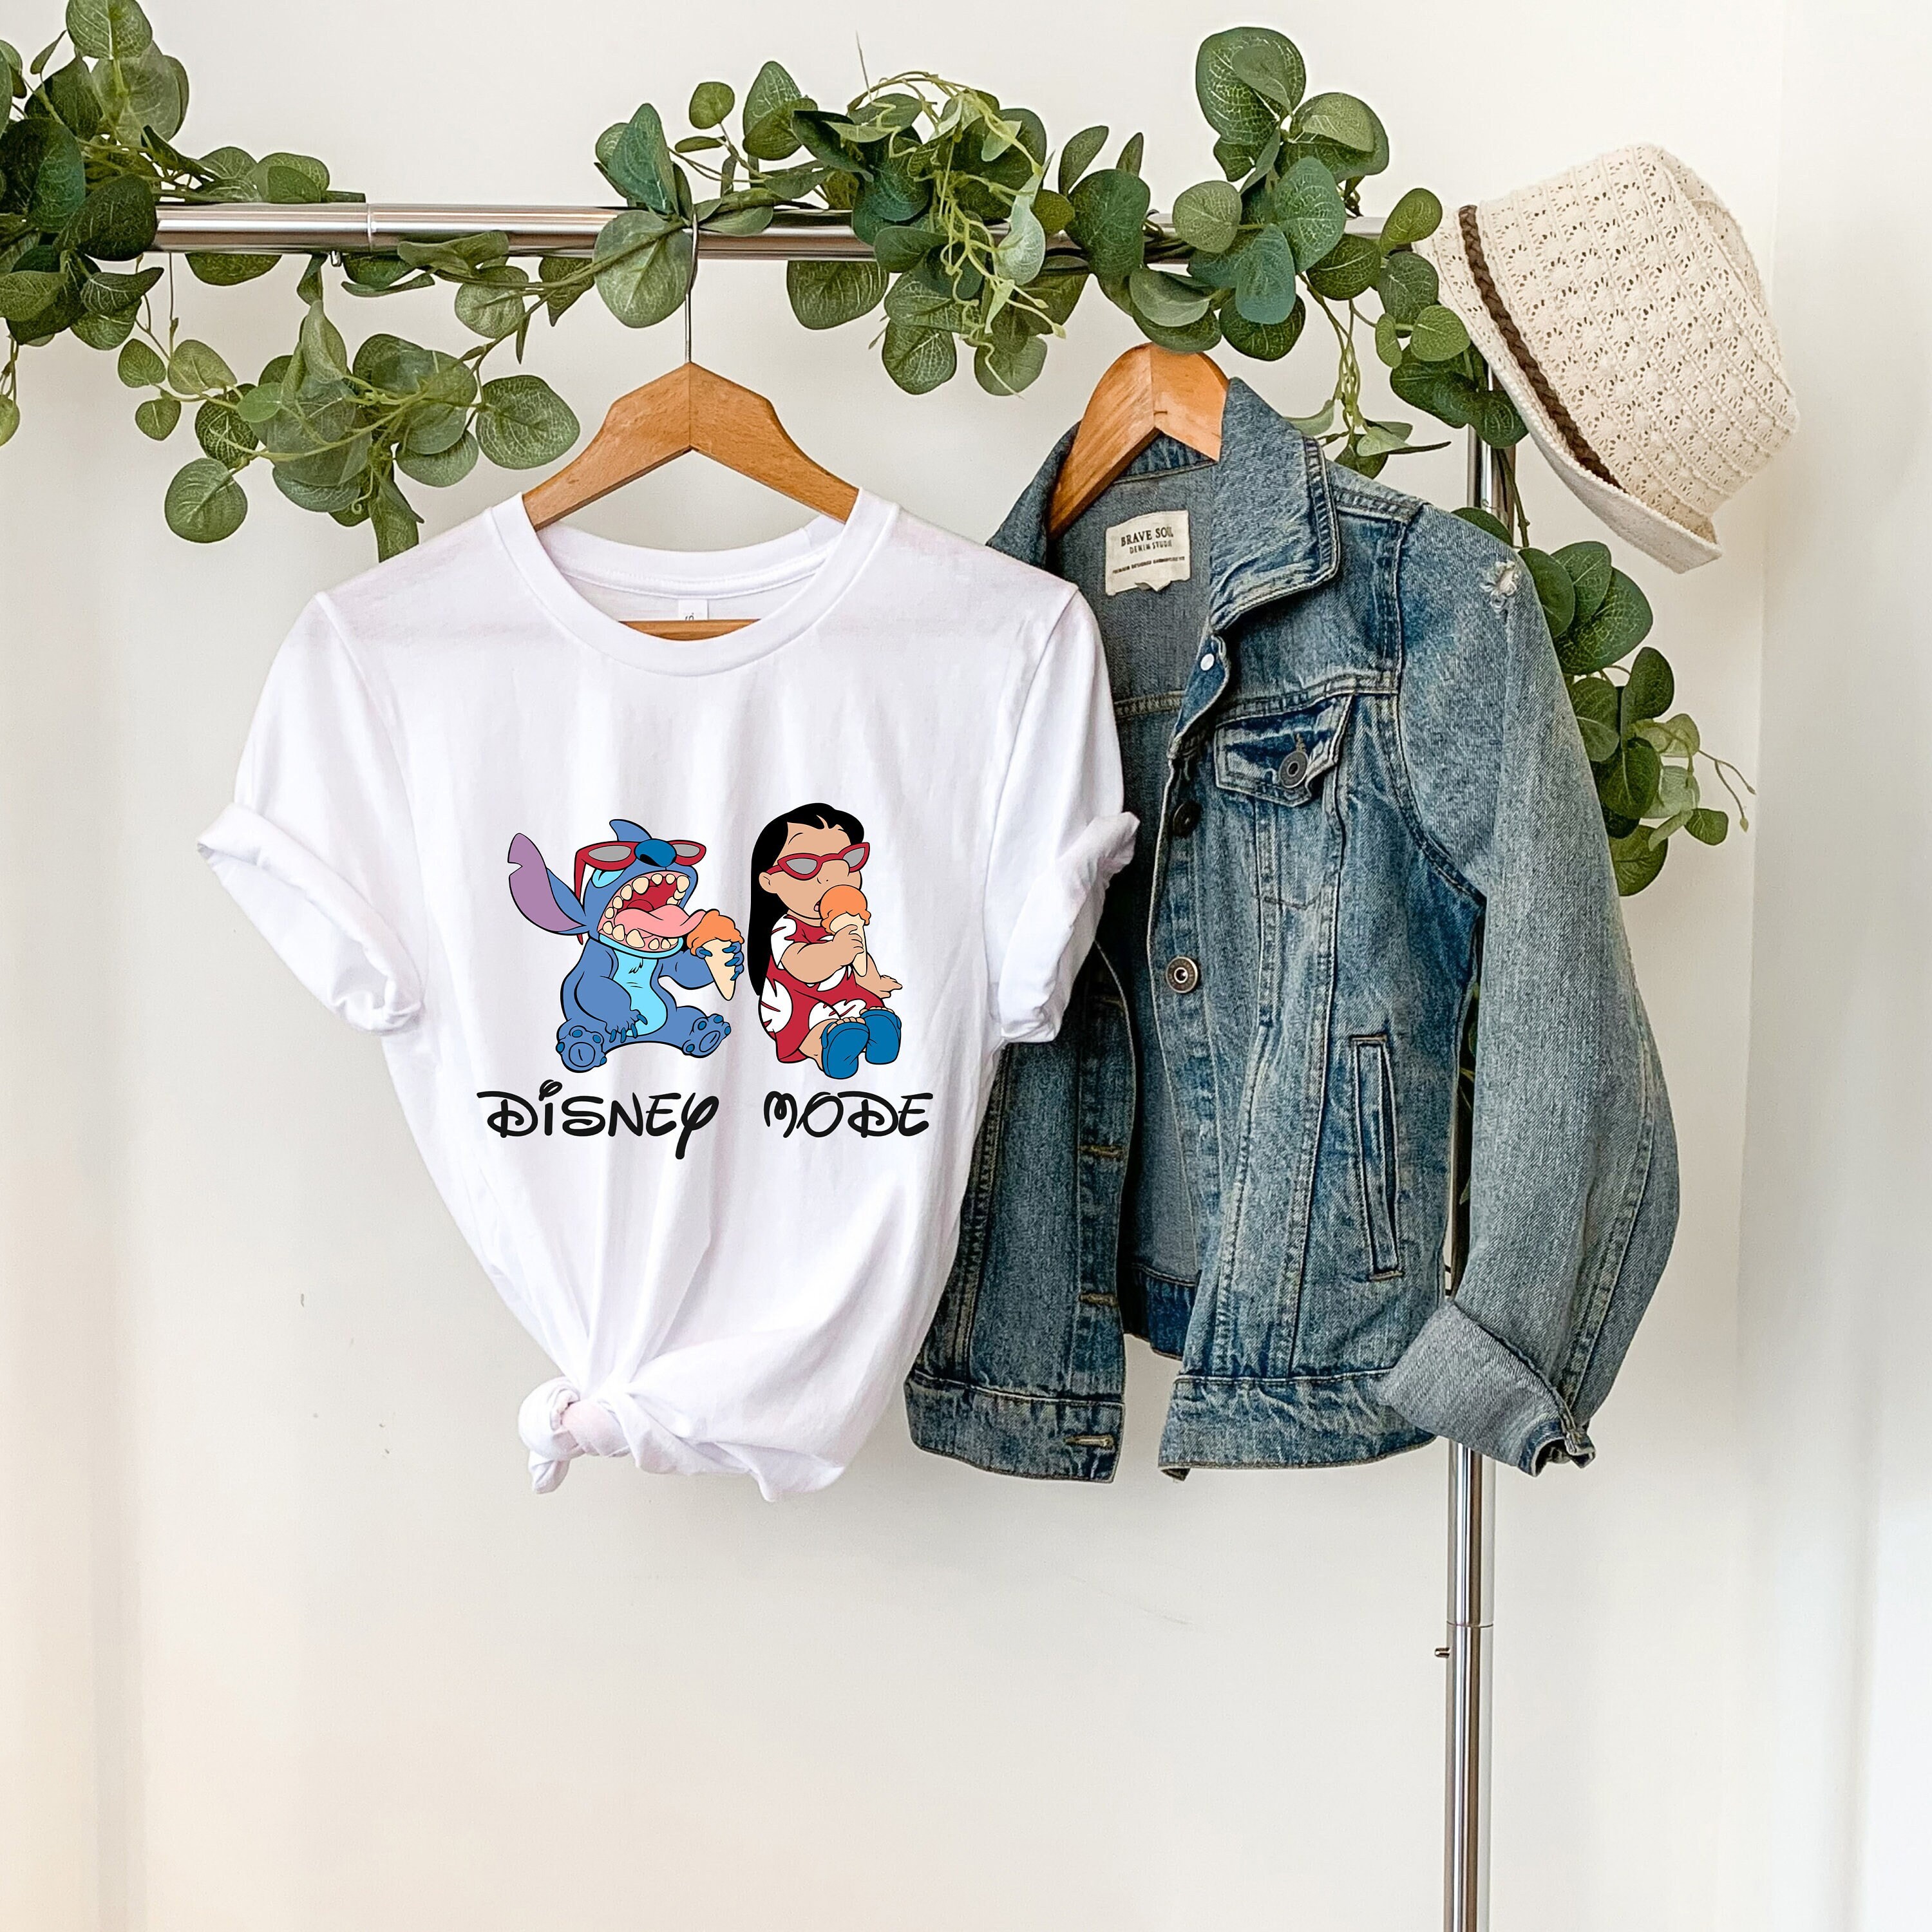 Stitch & Lilo Disney Mode Shirts, Disney Vacation Shirts